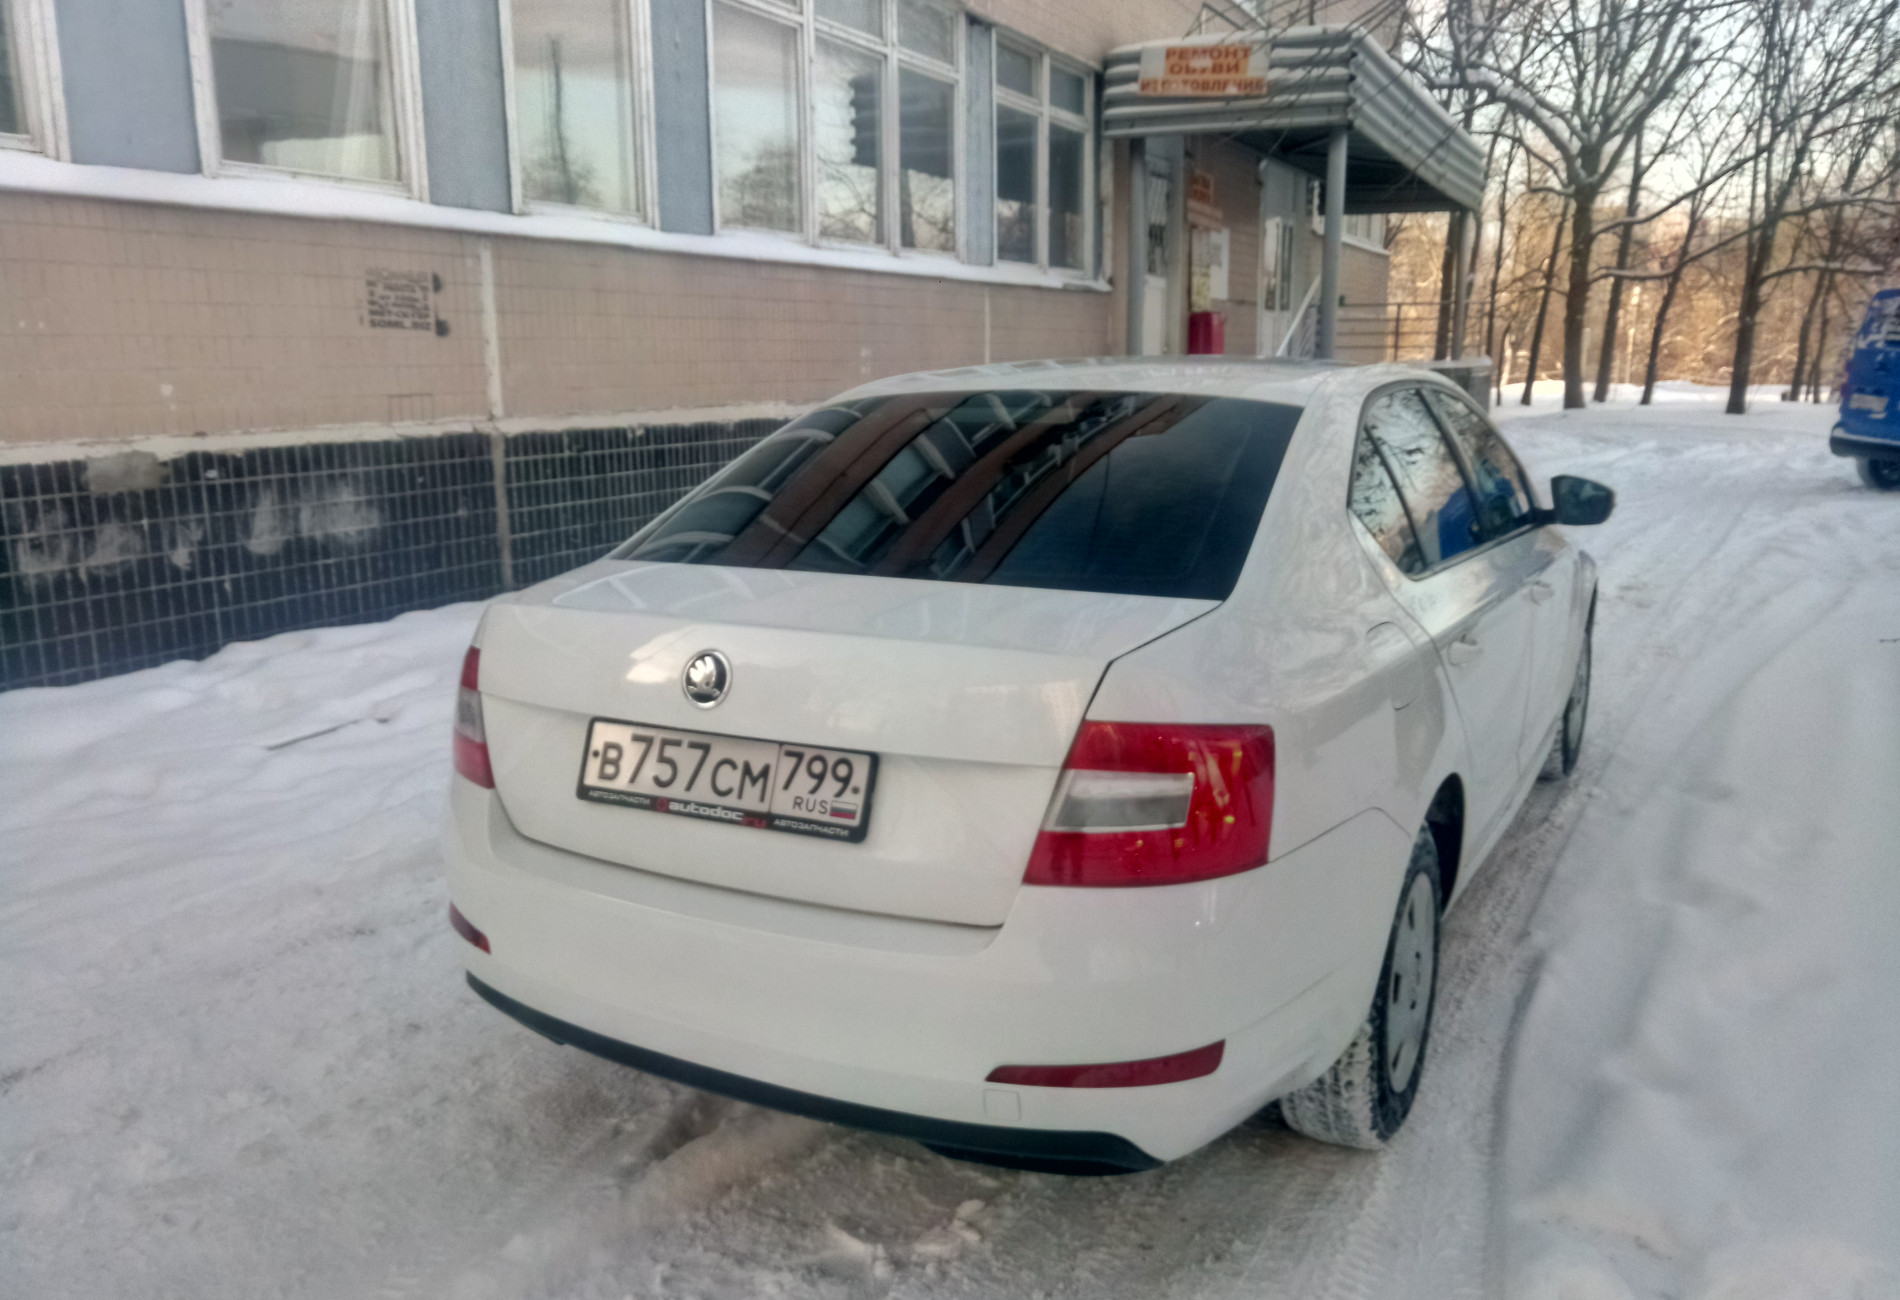 Аренда skoda octavia эконом класса 2015 года в городе Москва Ясенево от 1390 руб./сутки, передний привод, двигатель: бензин, объем 1.6 литров, ОСАГО (Мультидрайв), без водителя, недорого, вид 2 - RentRide